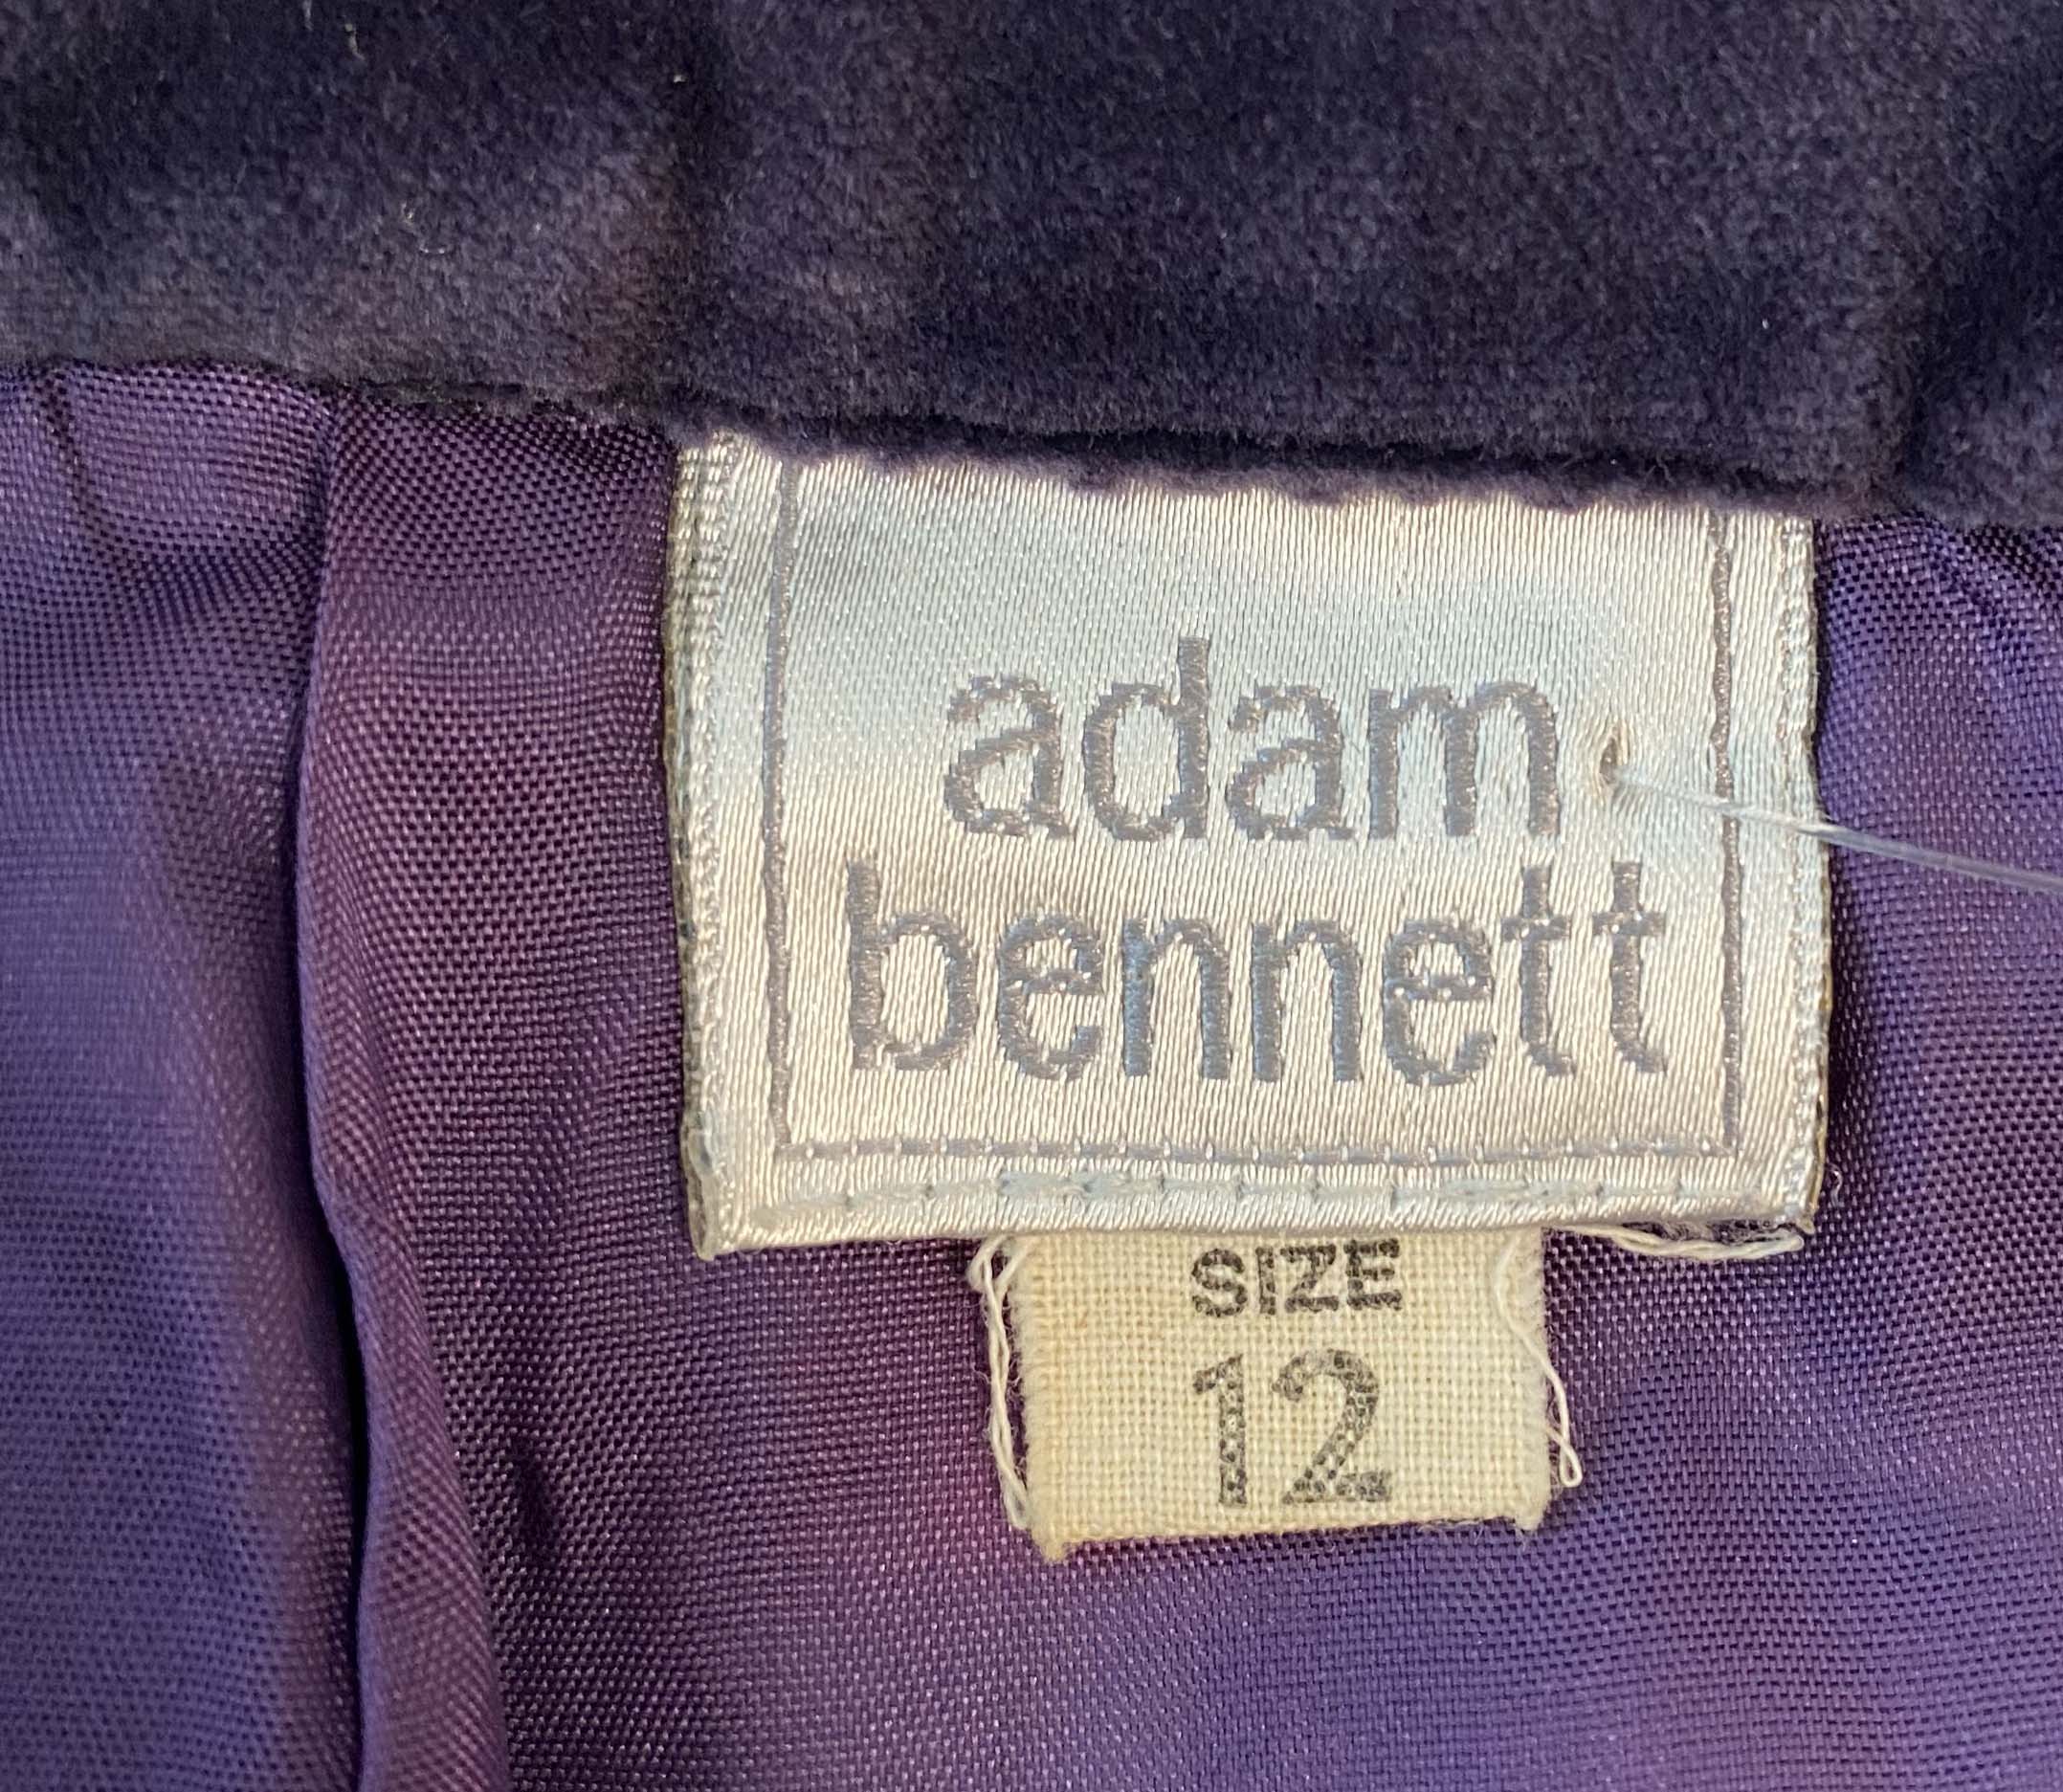 ADAM BENNETT velvet skirt suit